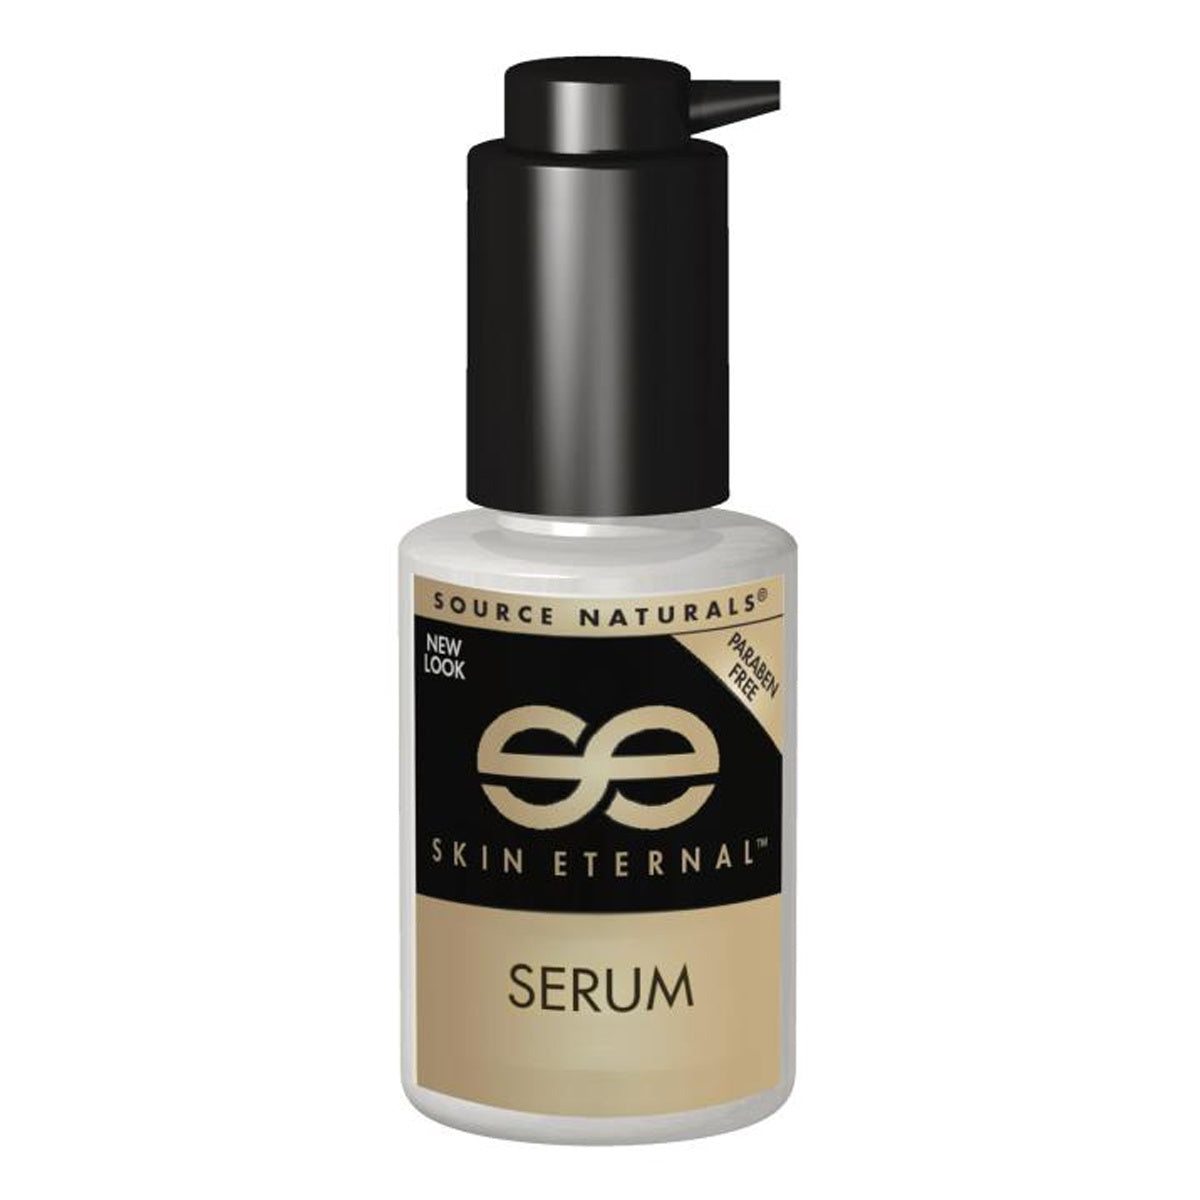 Primary image of Skin Eternal Serum